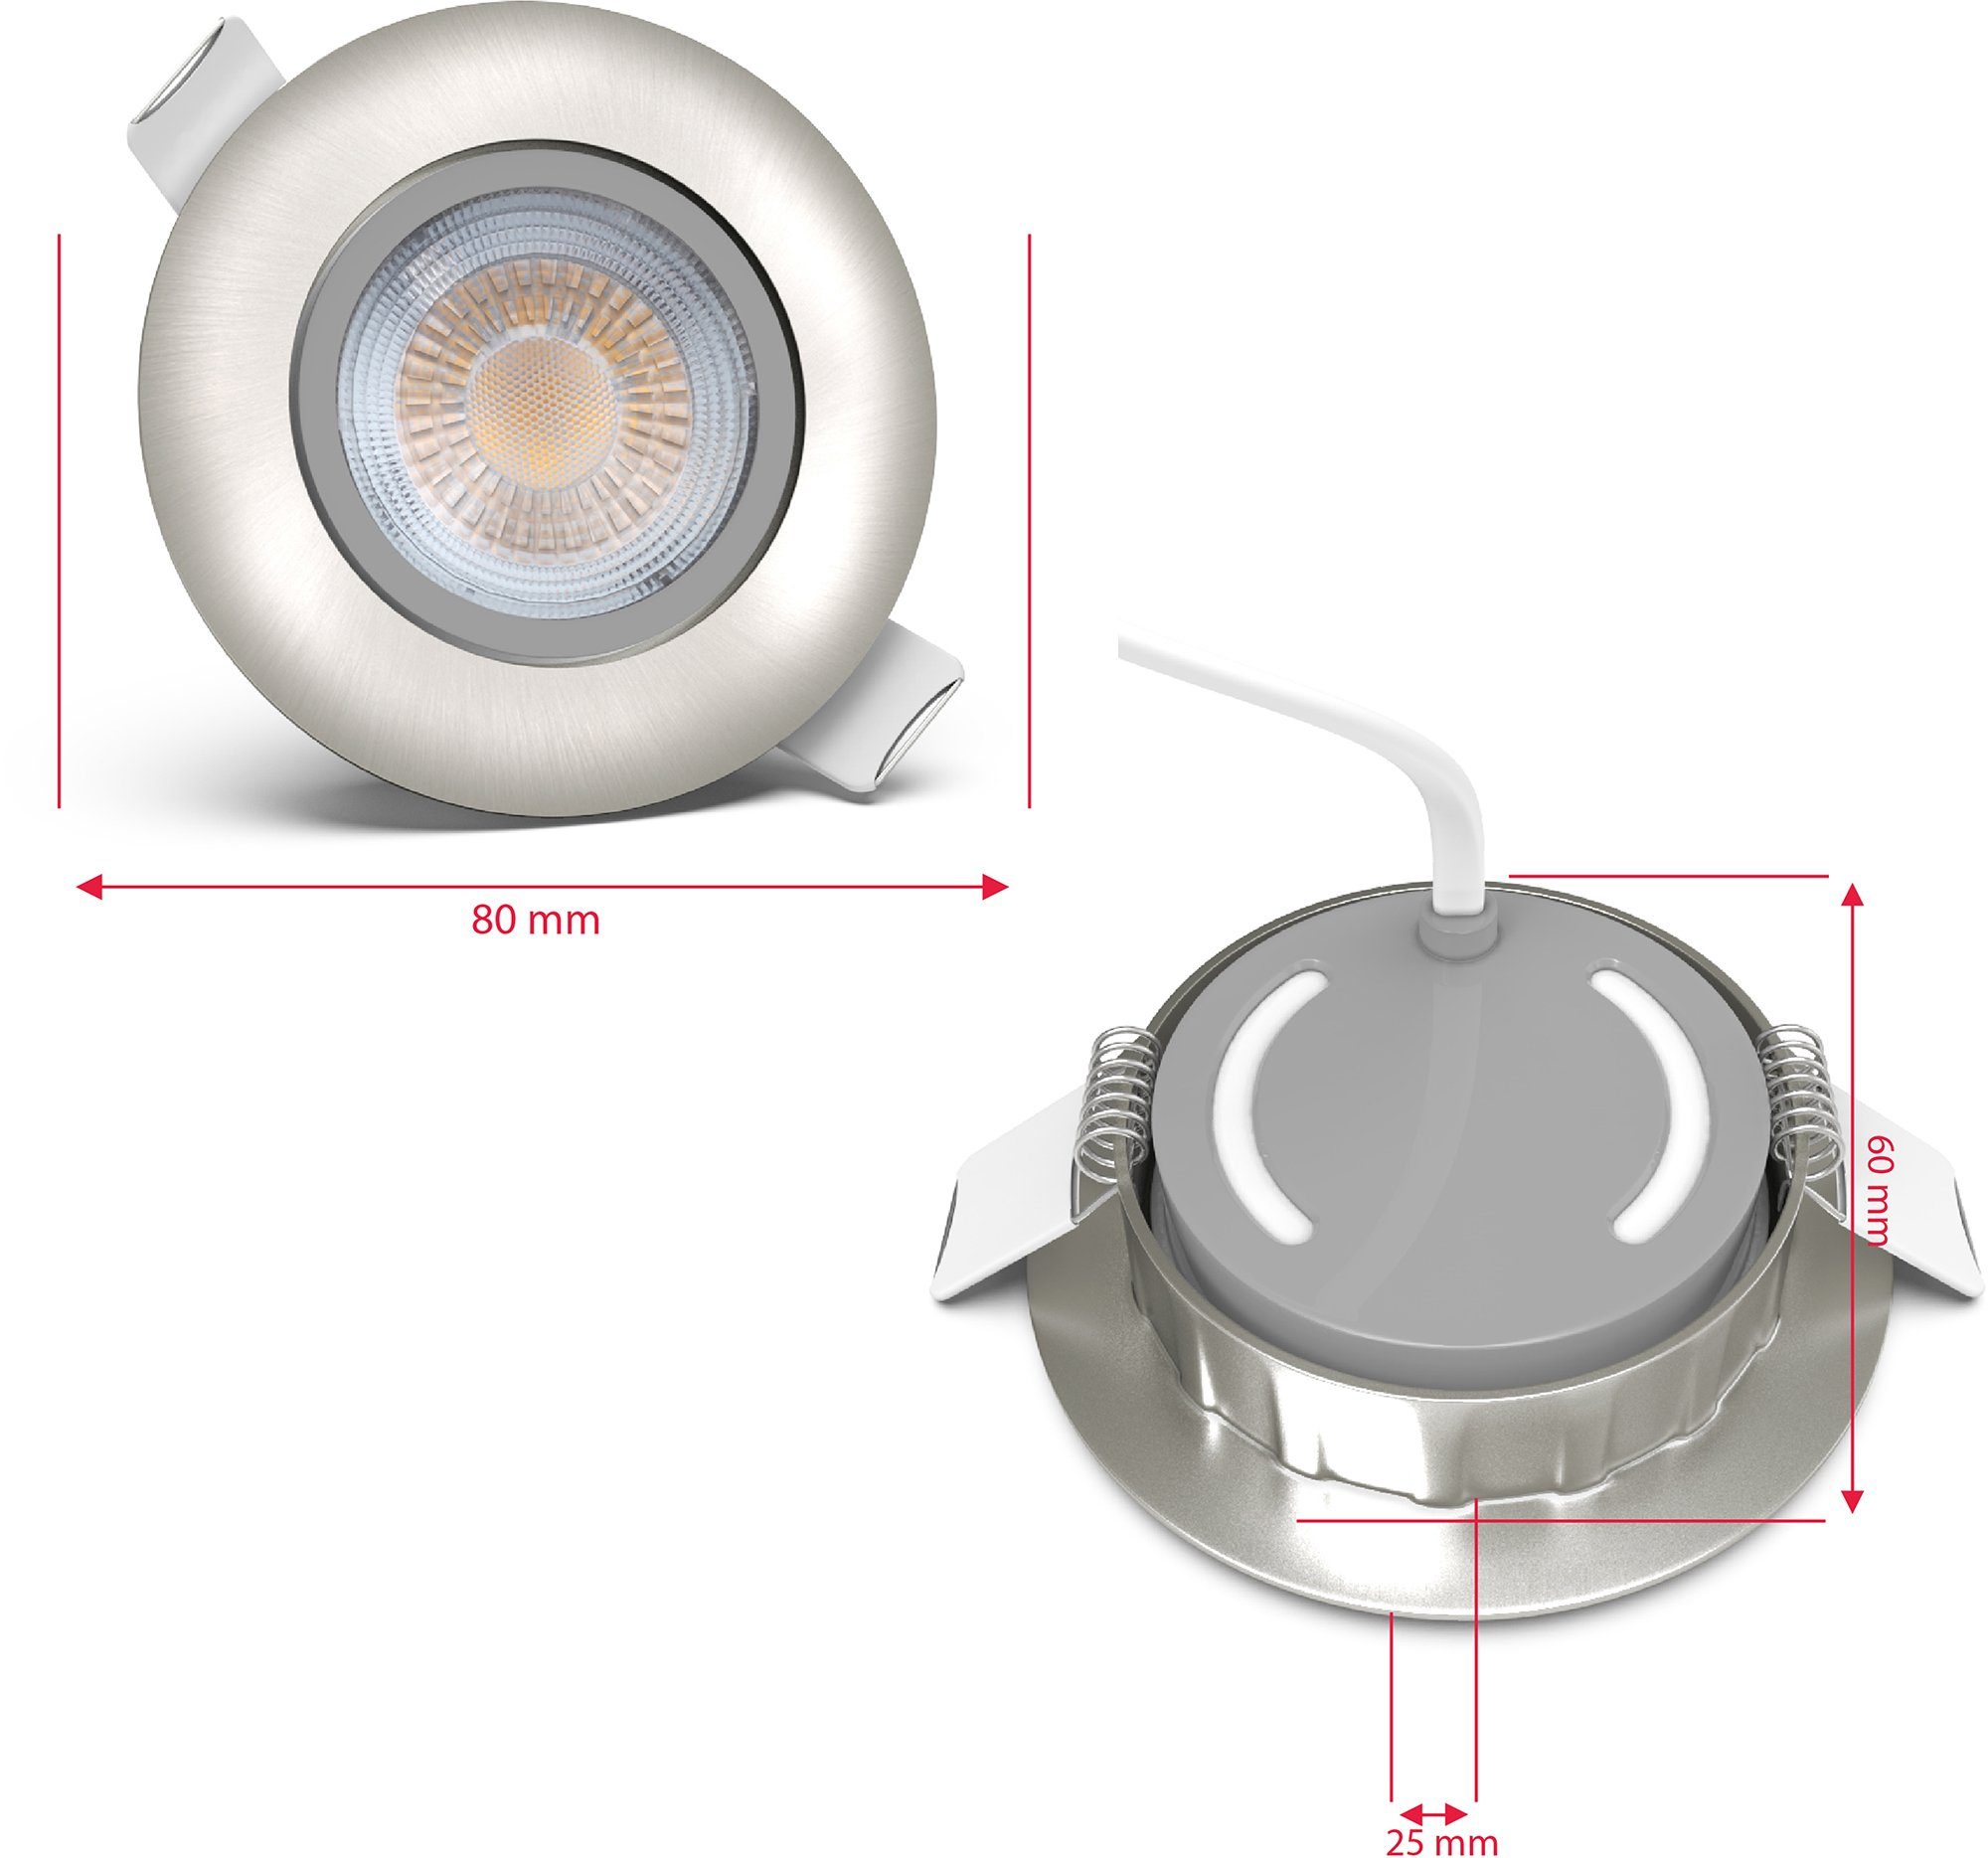 Deckenleuchten SET Volantis, 450lm B.K.Licht Einbauspots Warmweiß, integriert, Spots Einbauleuchte fest LED inkl.5W Einbaustrahler LED LED